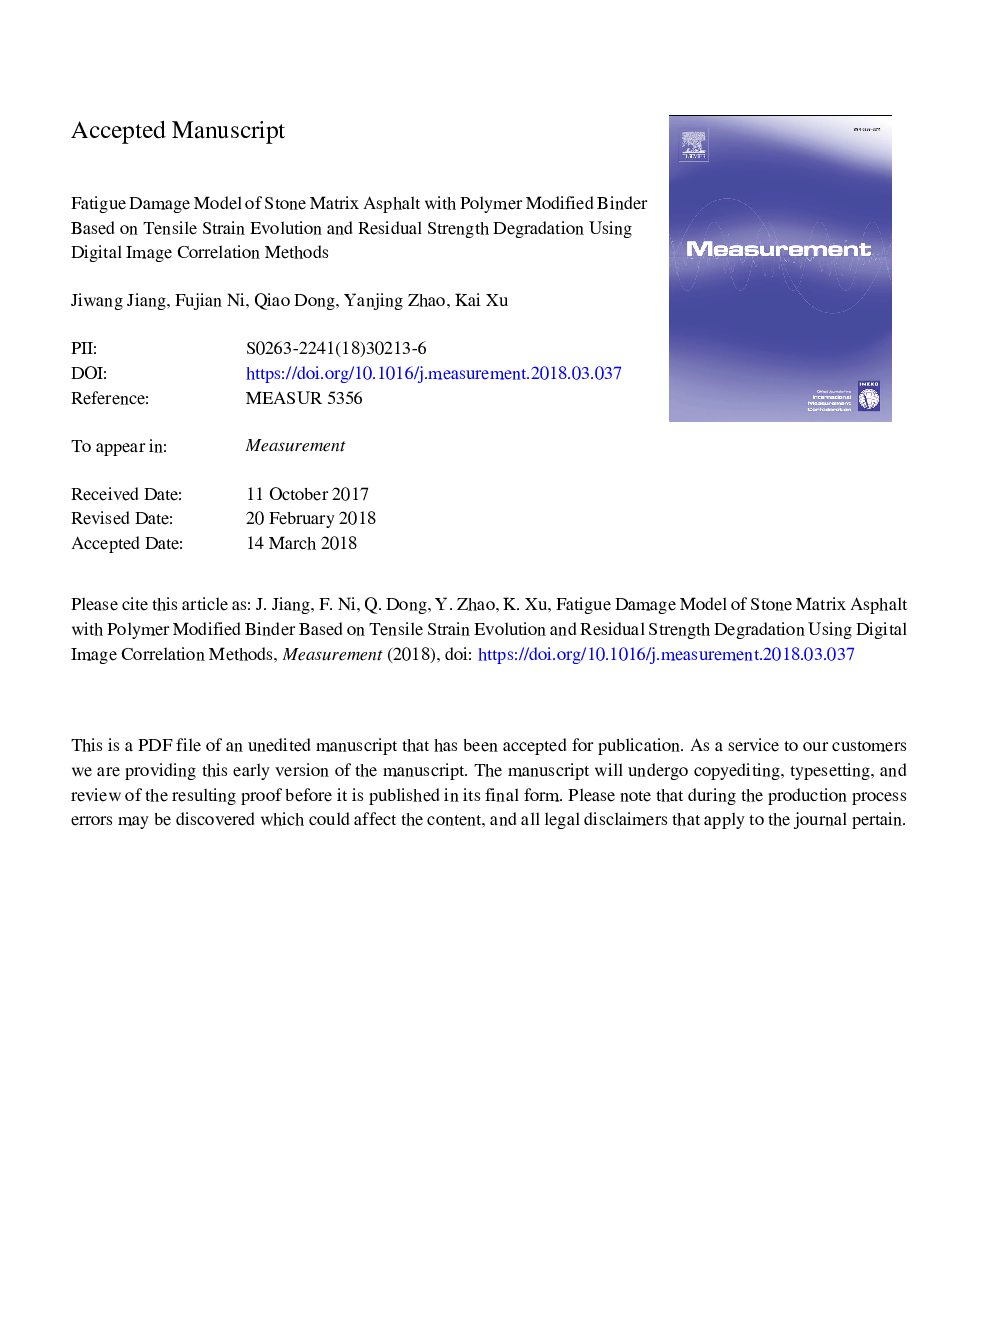 مدل آسیب خستگی آسفالت ماتریکس سنگی با باندینگ اصلاح شده پلیمر بر اساس تکامل کشش کششی و تضعیف مقاومت باقی مانده با استفاده از روش های همبستگی تصویر دیجیتال 